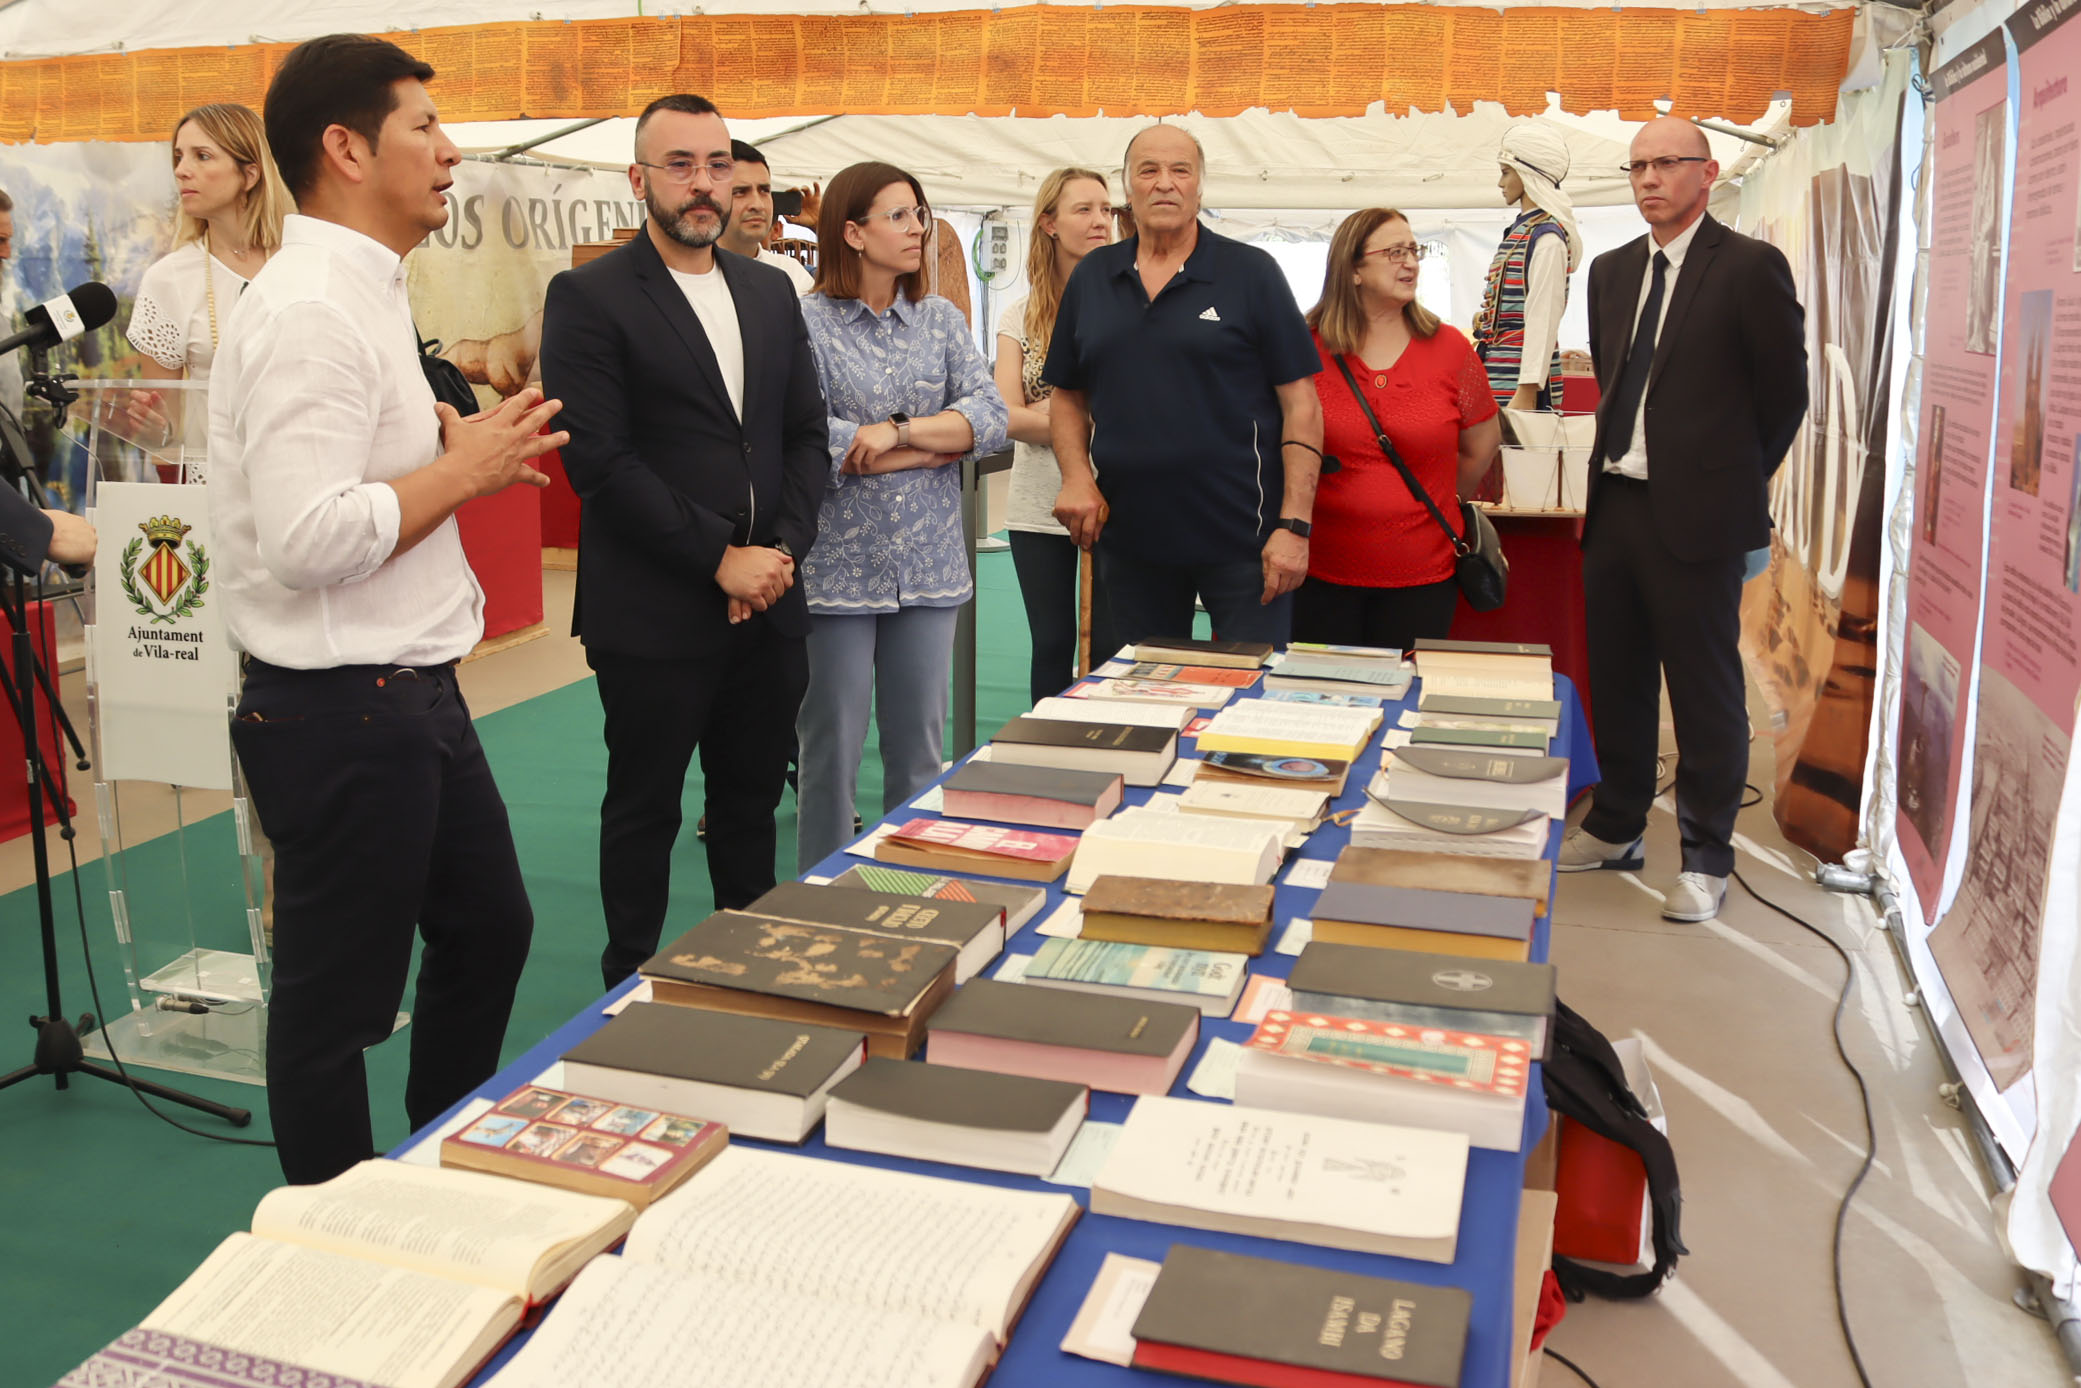 Vila-real pone de relieve la labor del Centro Cristiano con una programación de actividades para conmemorar su 50 aniversario